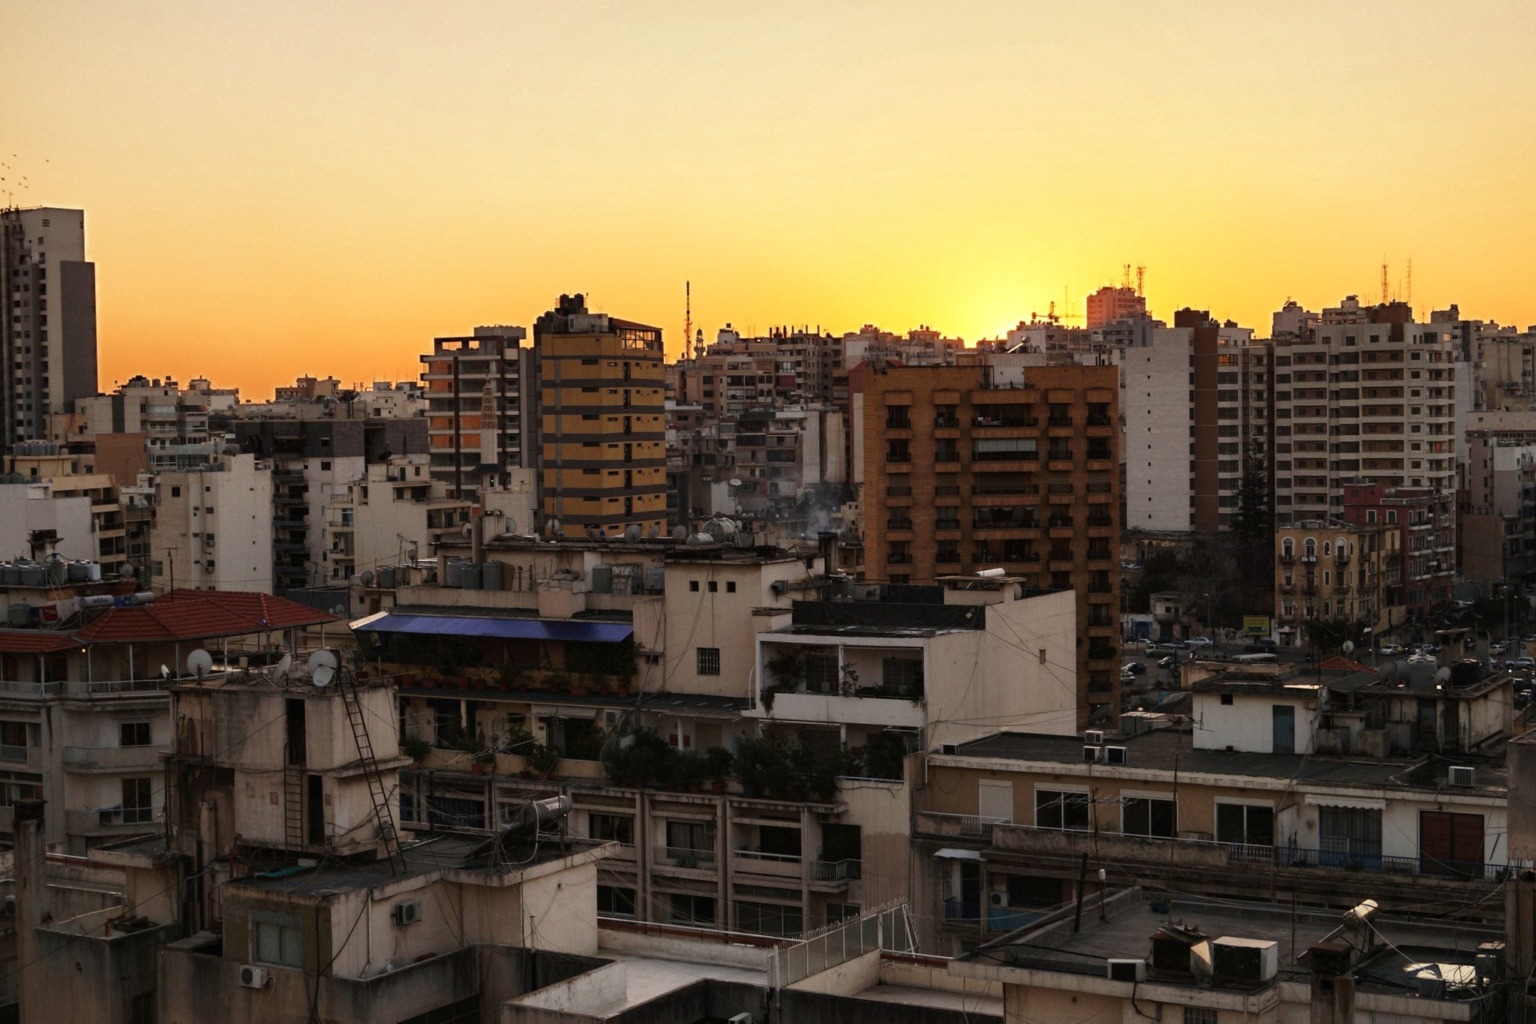 Libanons Hauptstadt Beirut ist im Dezember eine Reise wert.